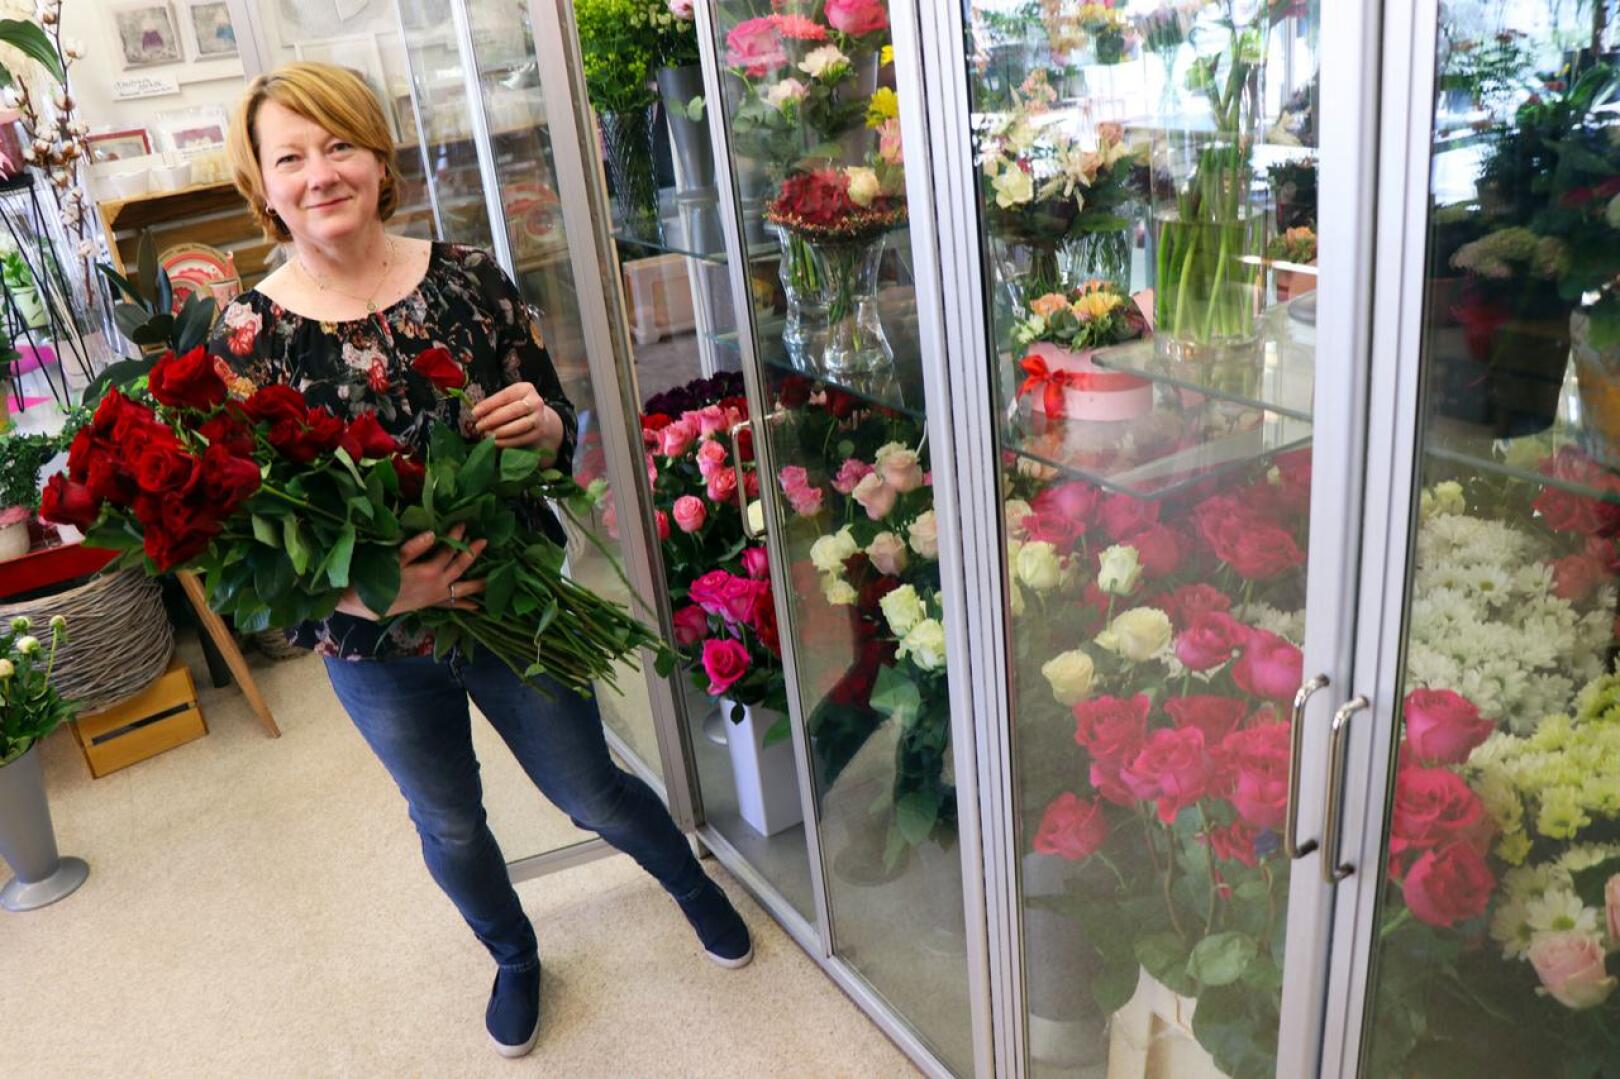 Koska isoja valmistujaisjuhlia ei tänä keväänä järjestetä, monet kukkakaupat ovat varanneet normaalia vähemmän onnitteluruusuja, kertoo Valkoisen Purjeen floristi Merja Lokasaari kertoo. 